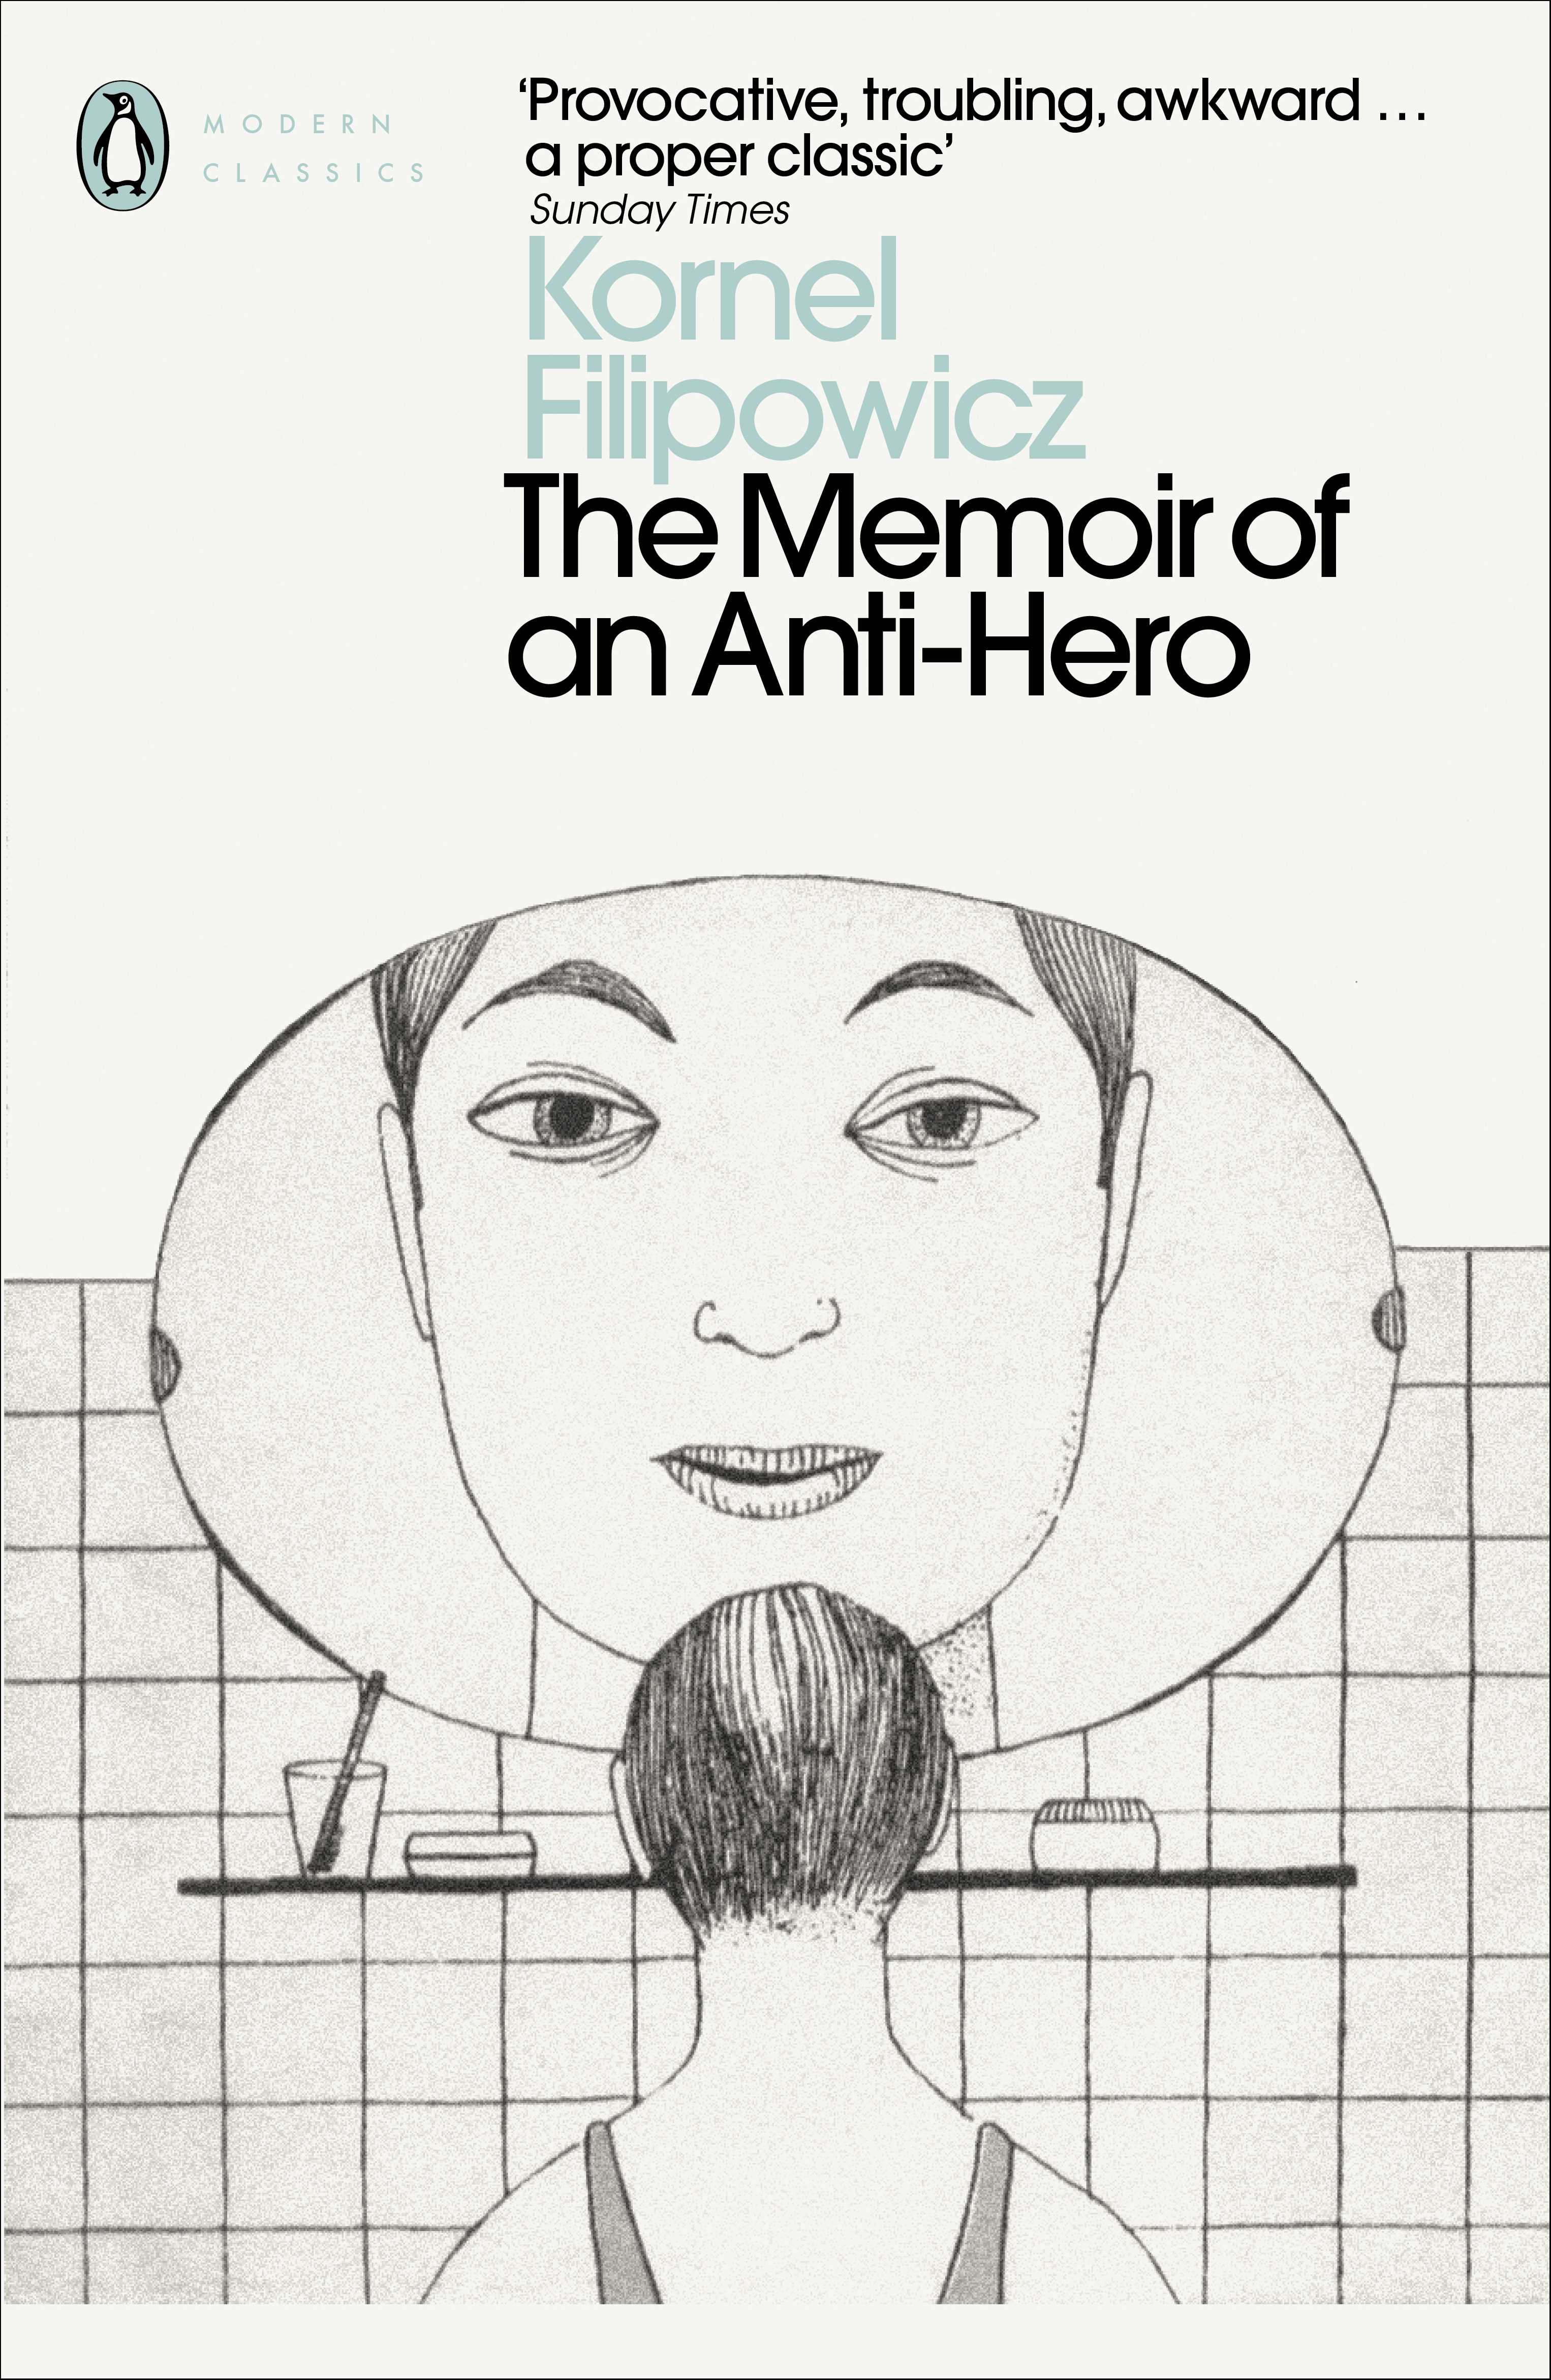 The Memoir of an Anti-Hero